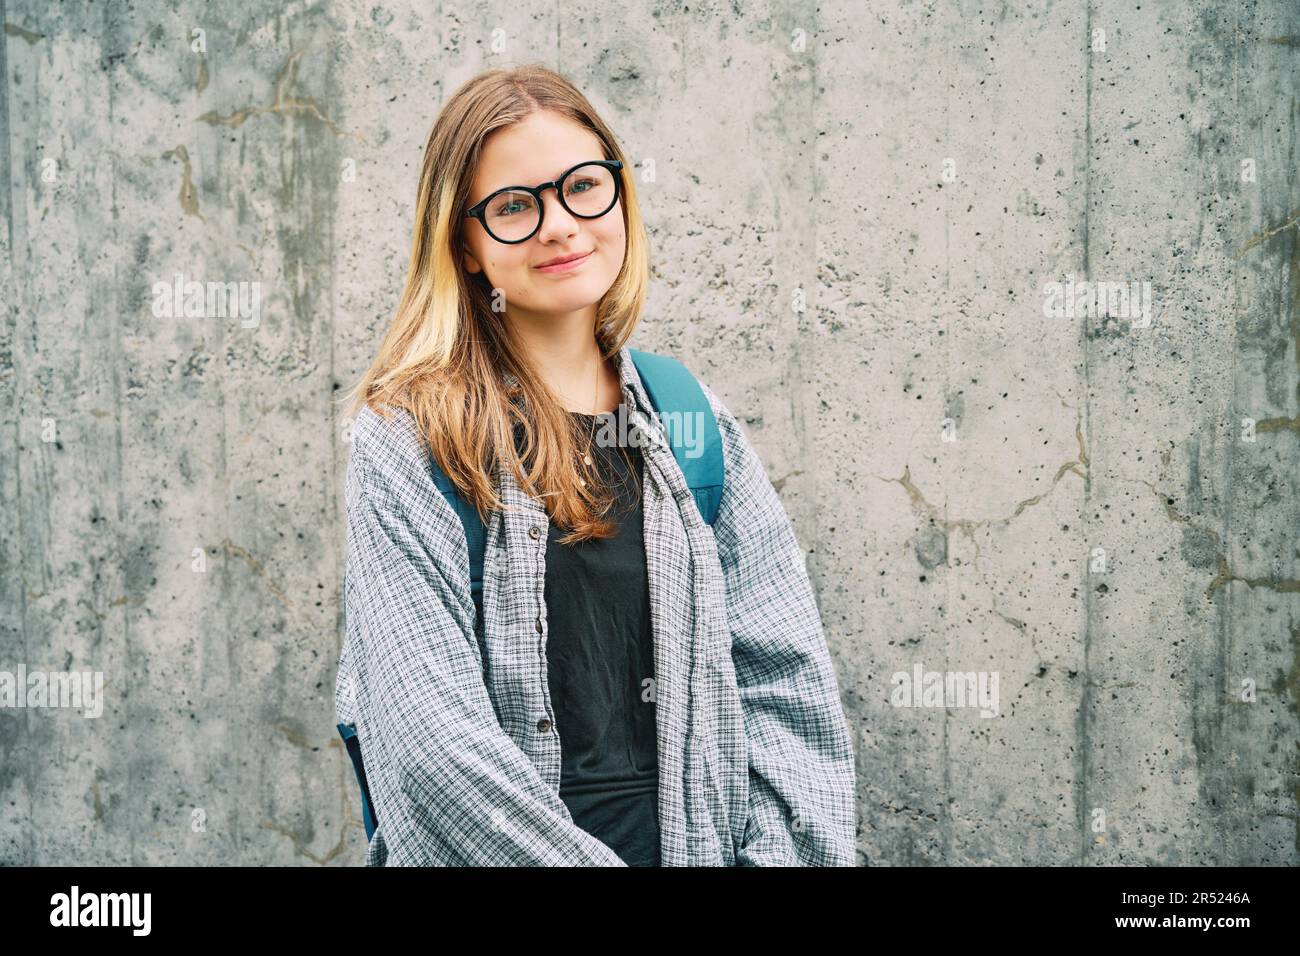 Ritratto all'aperto della giovane ragazza adolescente che indossa occhiali e zaino, posato su sfondo grigio parete Foto Stock